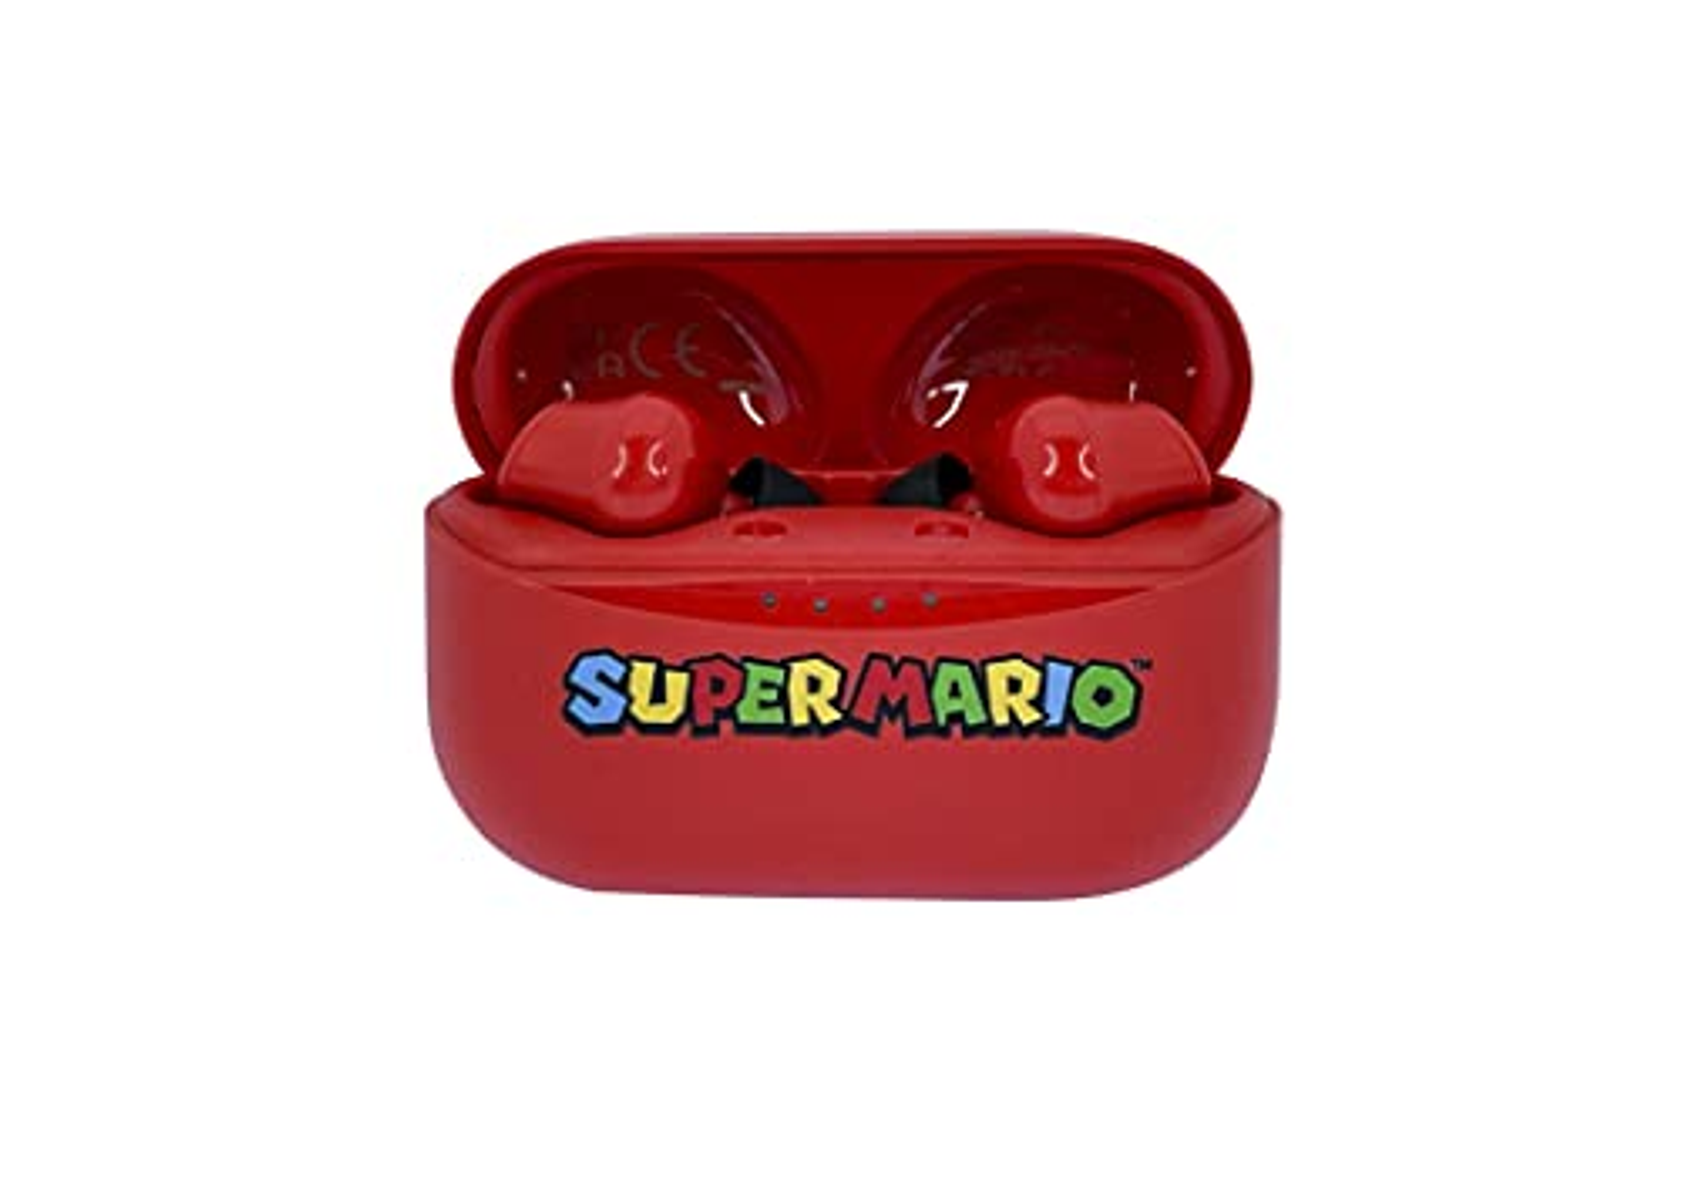 Mario, rot OTL Kopfhörer In-ear TECHNOLOGIES Bluetooth Super